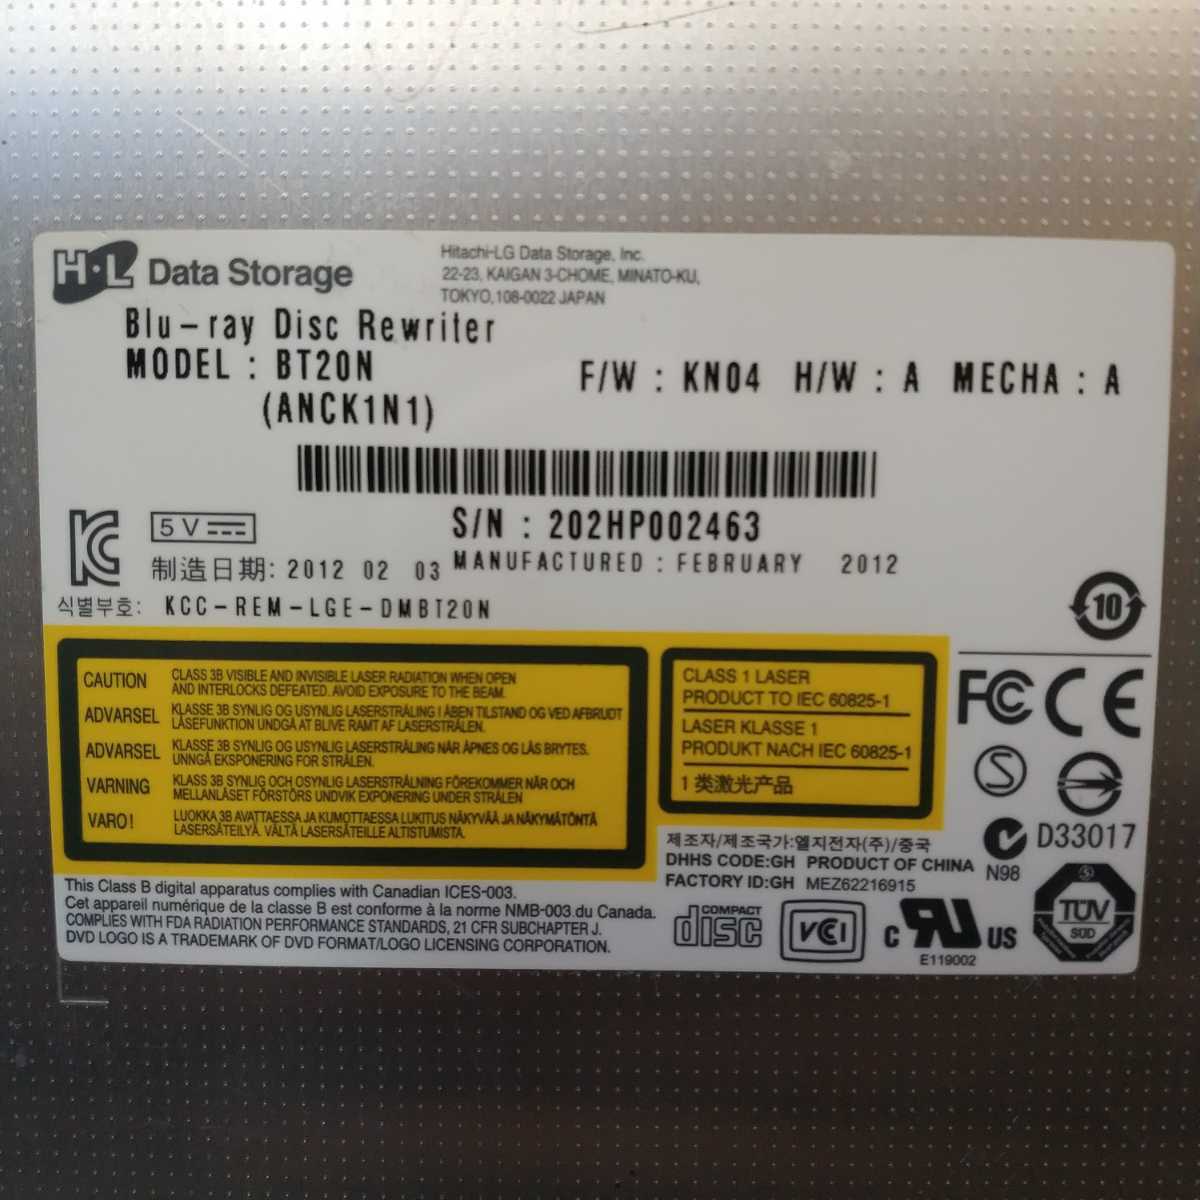  внутренний отправка в тот же день стоимость доставки 198 иен * H*L Data Storage Blue-ray Drive Blu-ray * BT20N SATA 12.7mm оправа нет 2012 год производства * рабочее состояние подтверждено D450